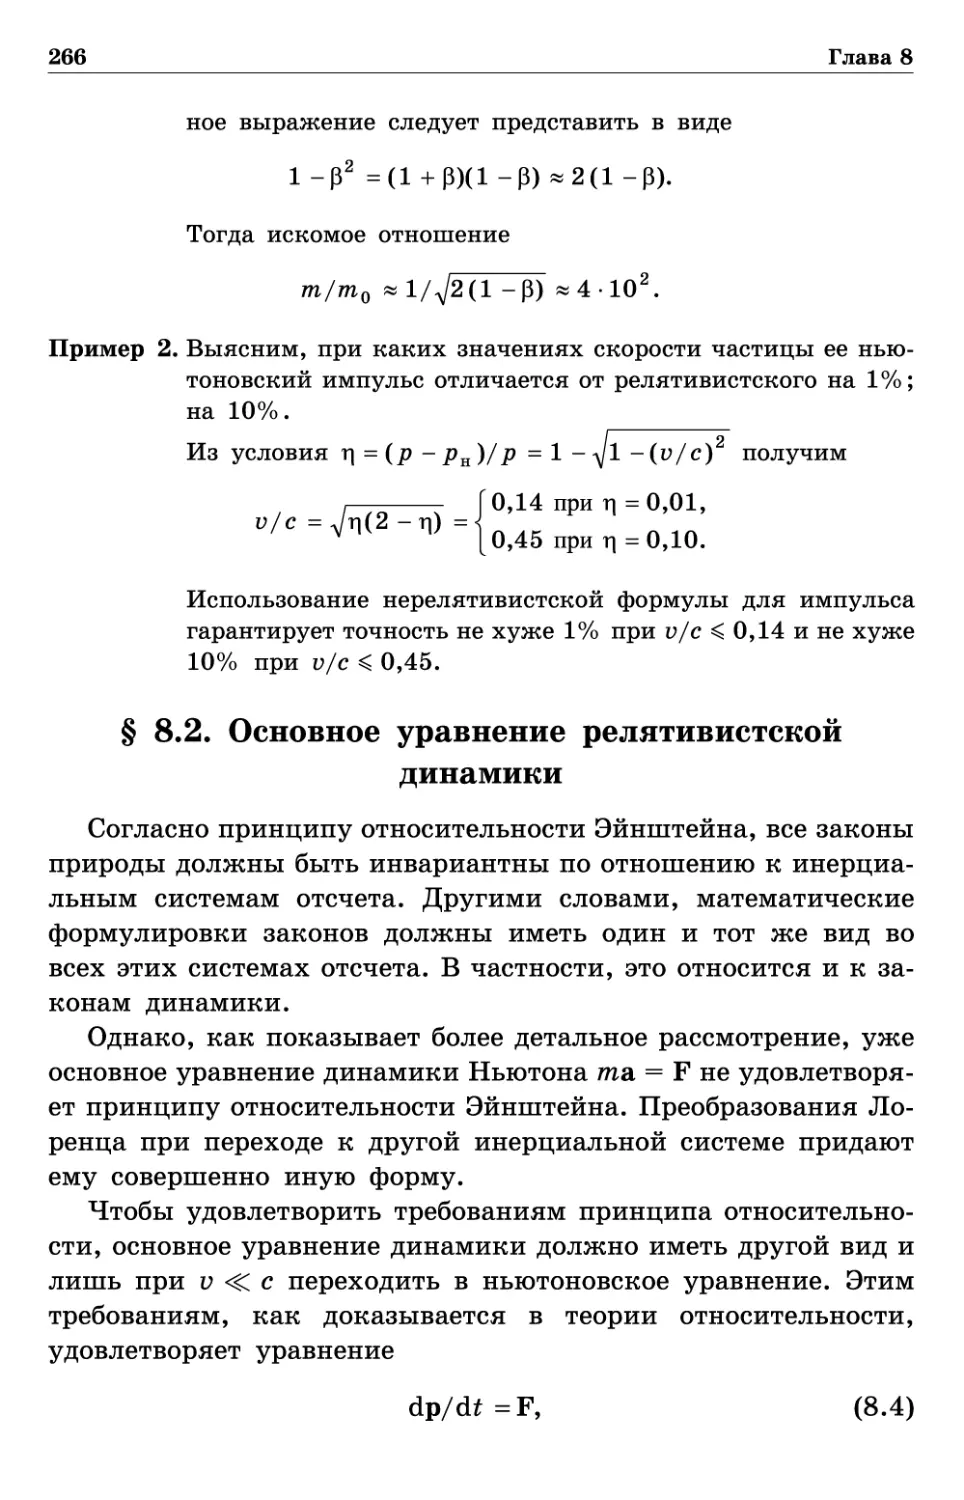 § 8.2. Основное уравнение релятивистской динамики